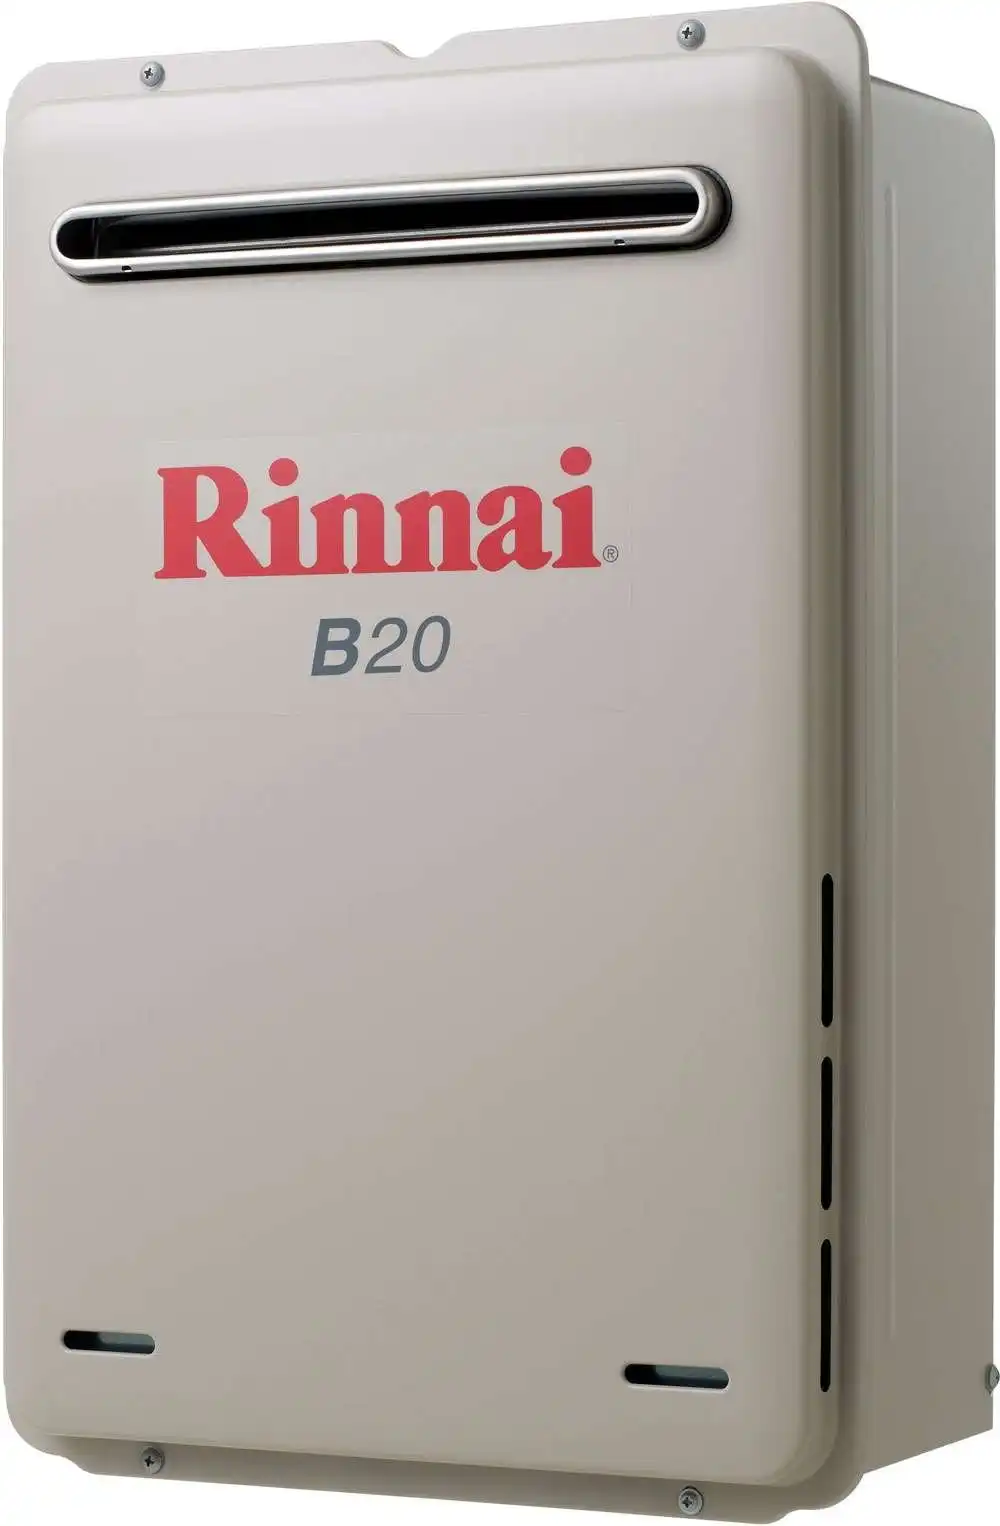 Rinnai Builders 50oC 20L Instant Hot Water System B20L50A B20 *LPG GAS*